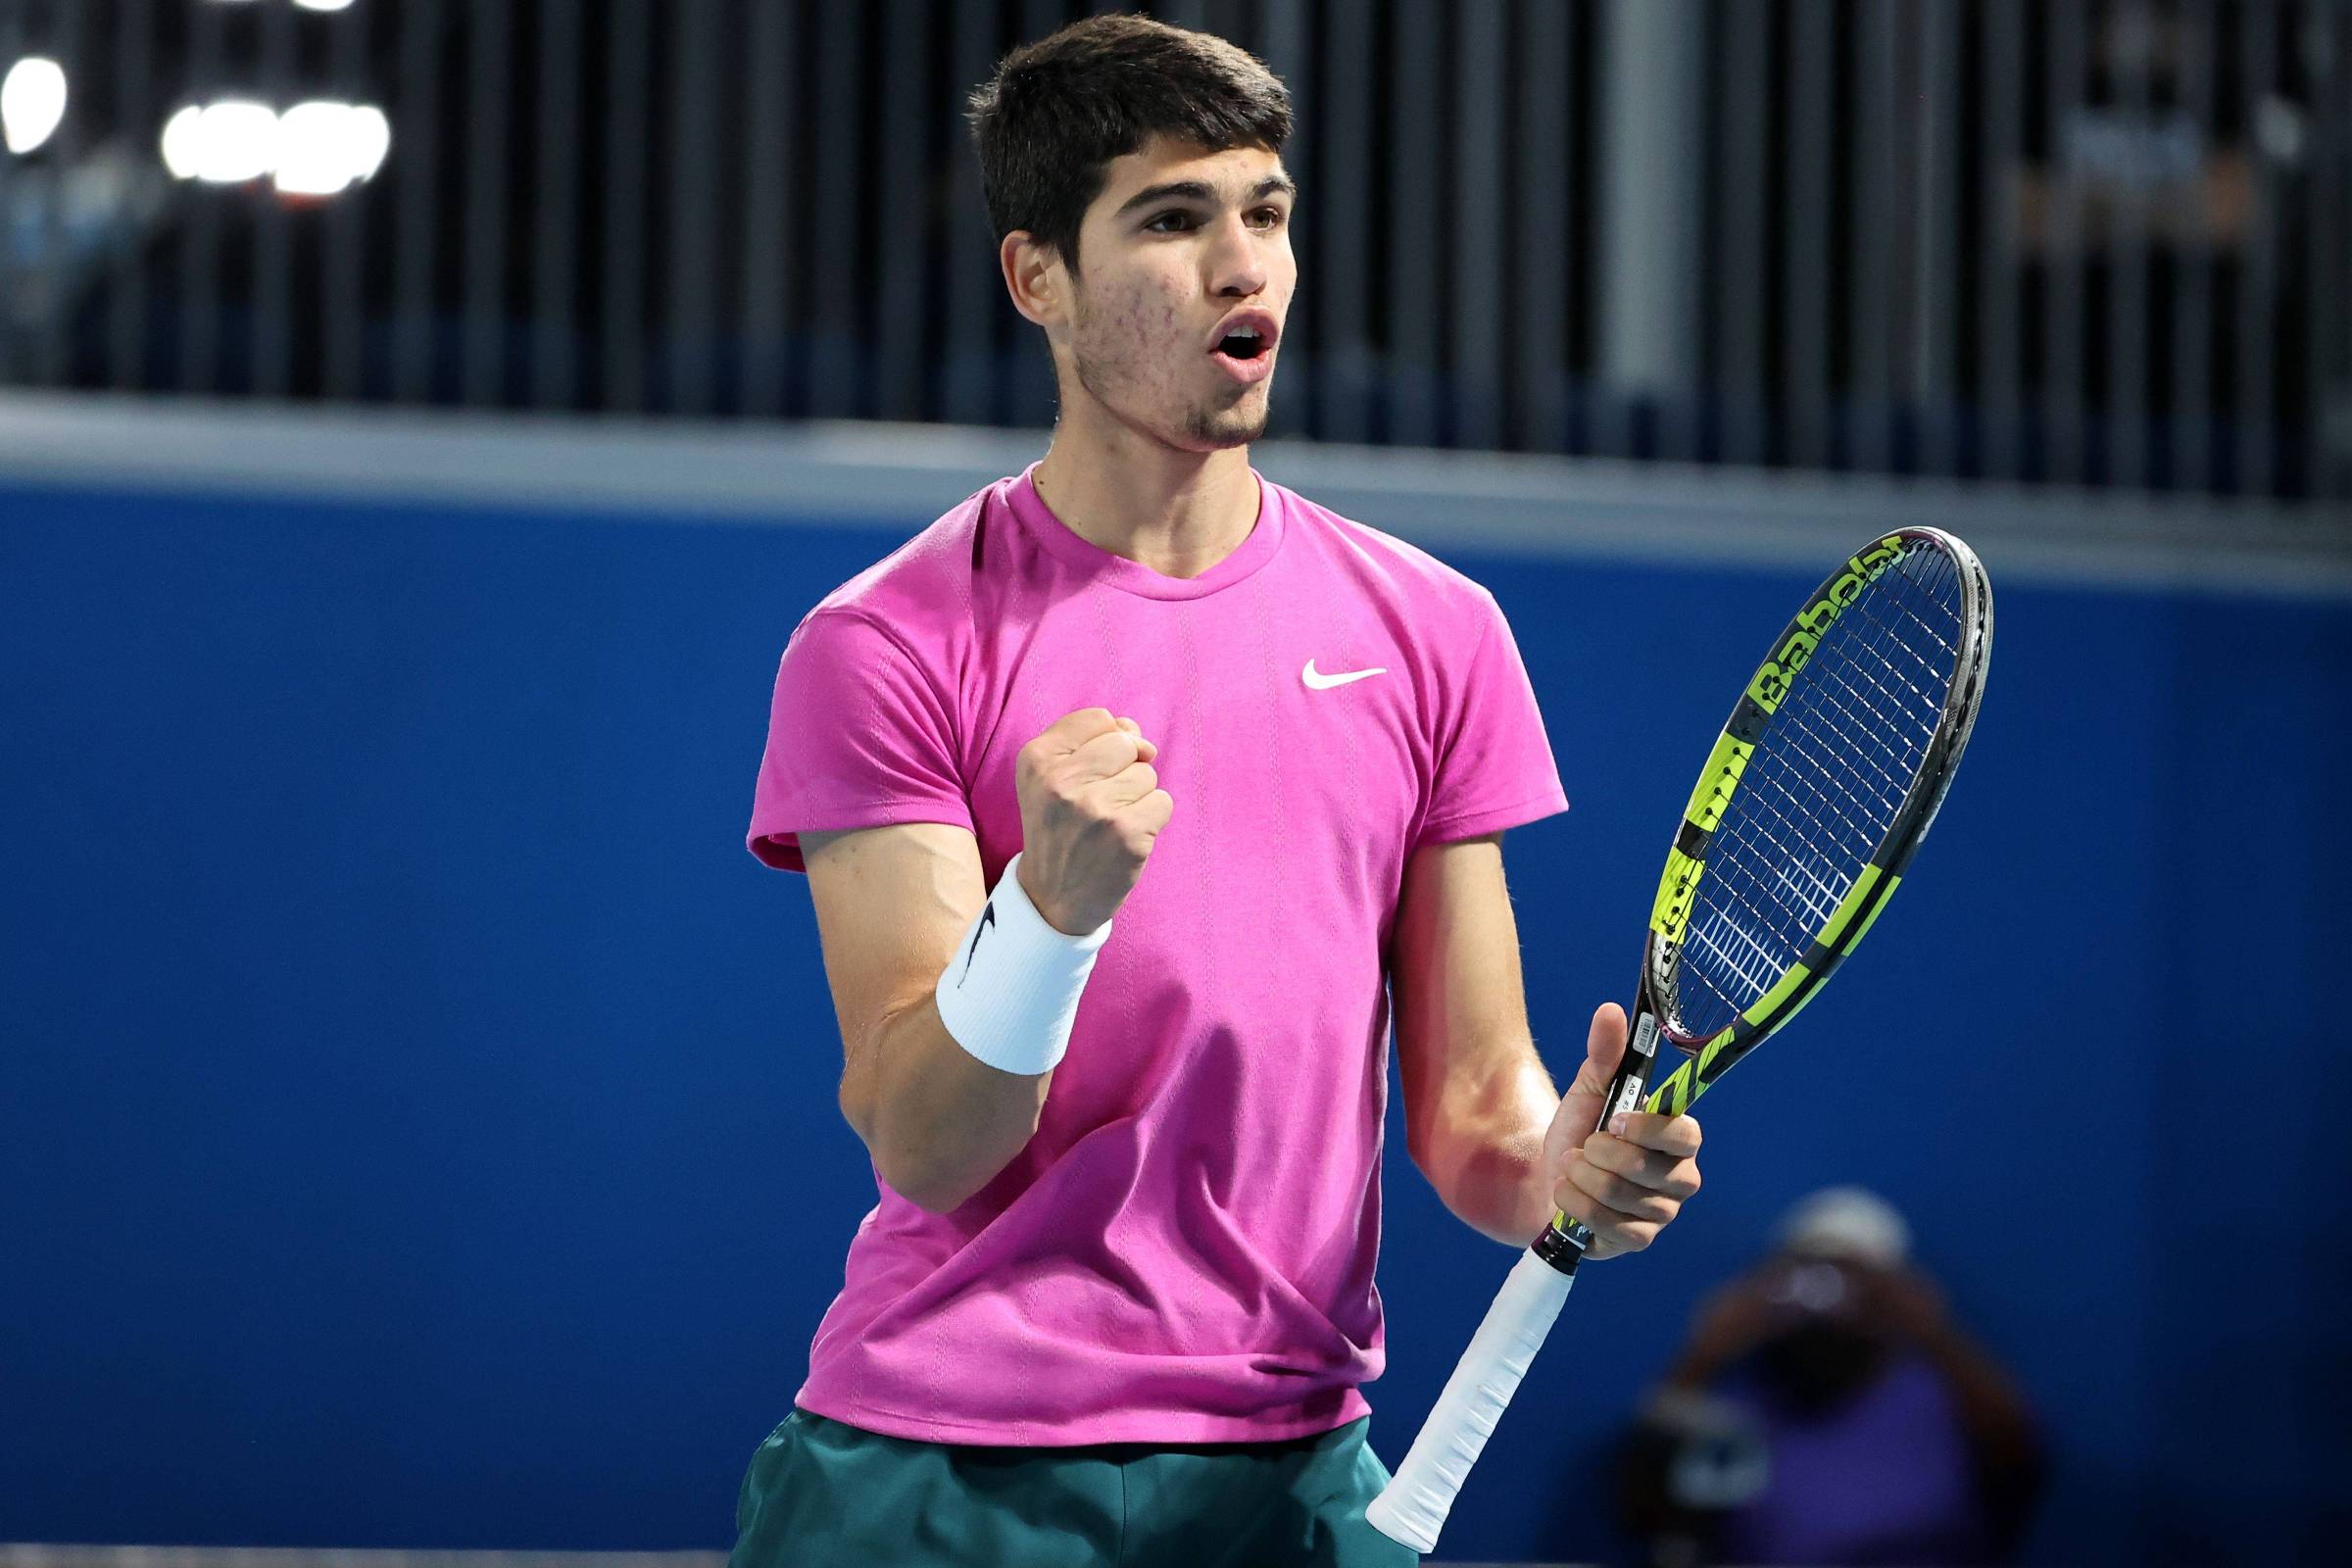 Inspirado em Nadal, Carlos Alcaraz empilha feitos no tênis aos 17 anos